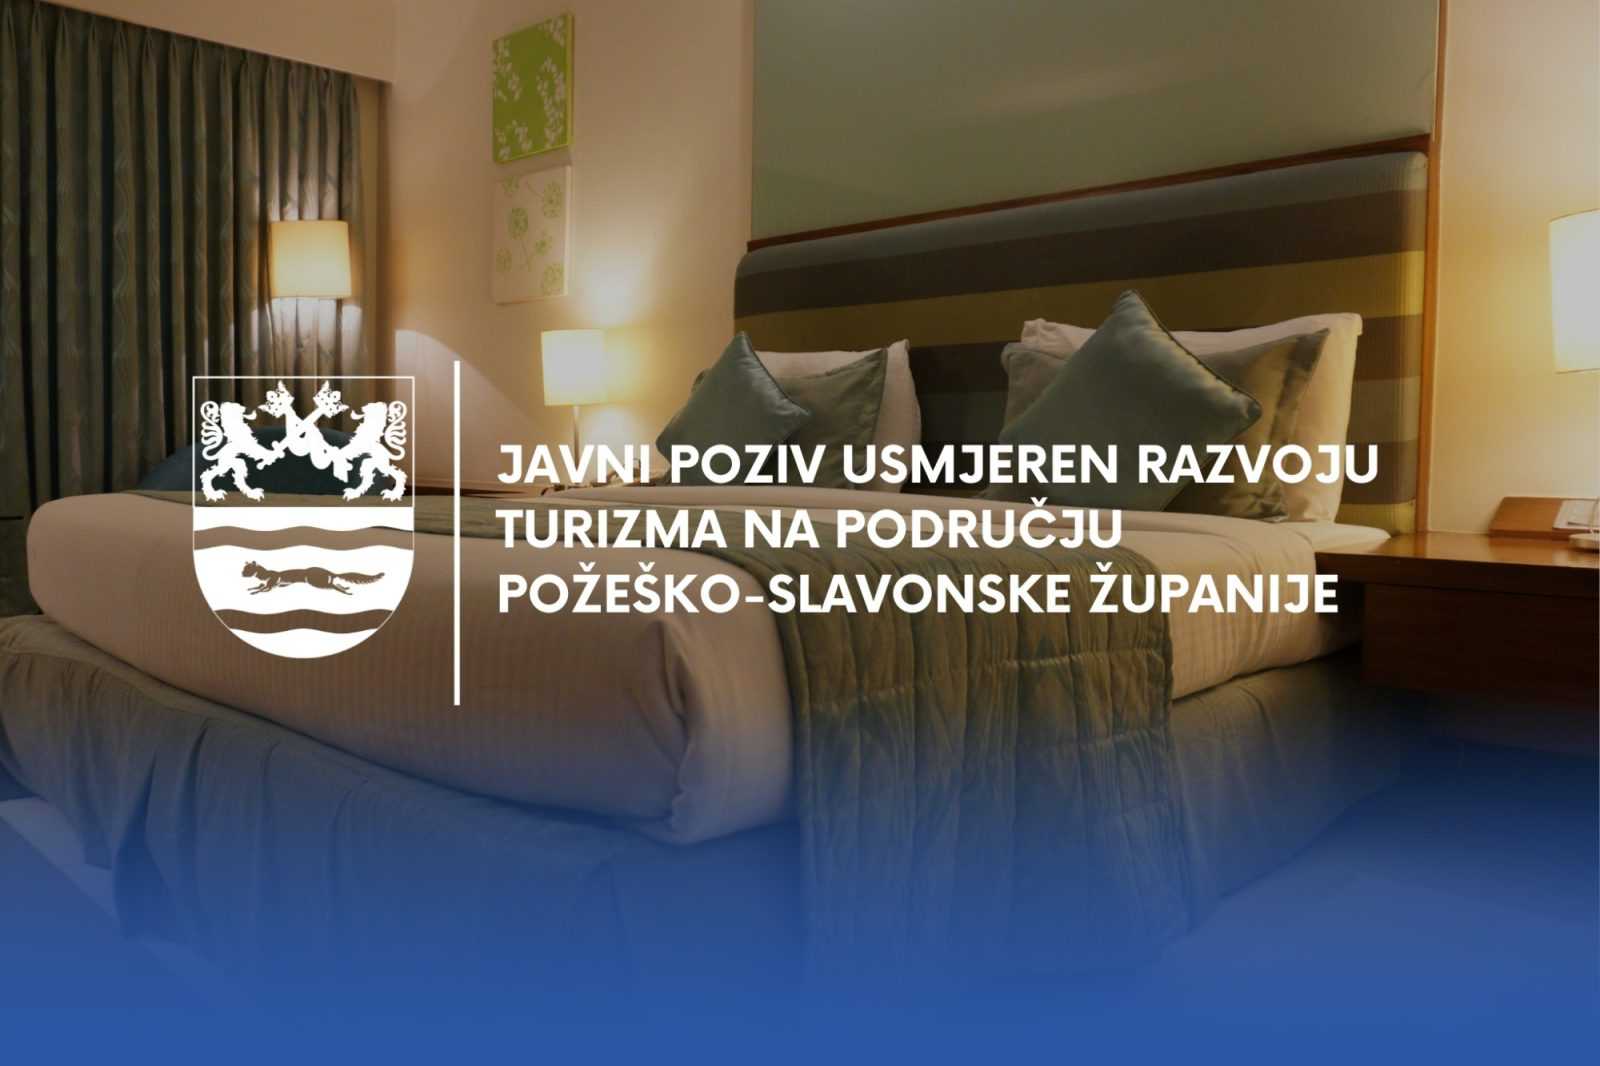 Požeško-slavonska županija objavila Javni poziv usmjeren razvoju turizma